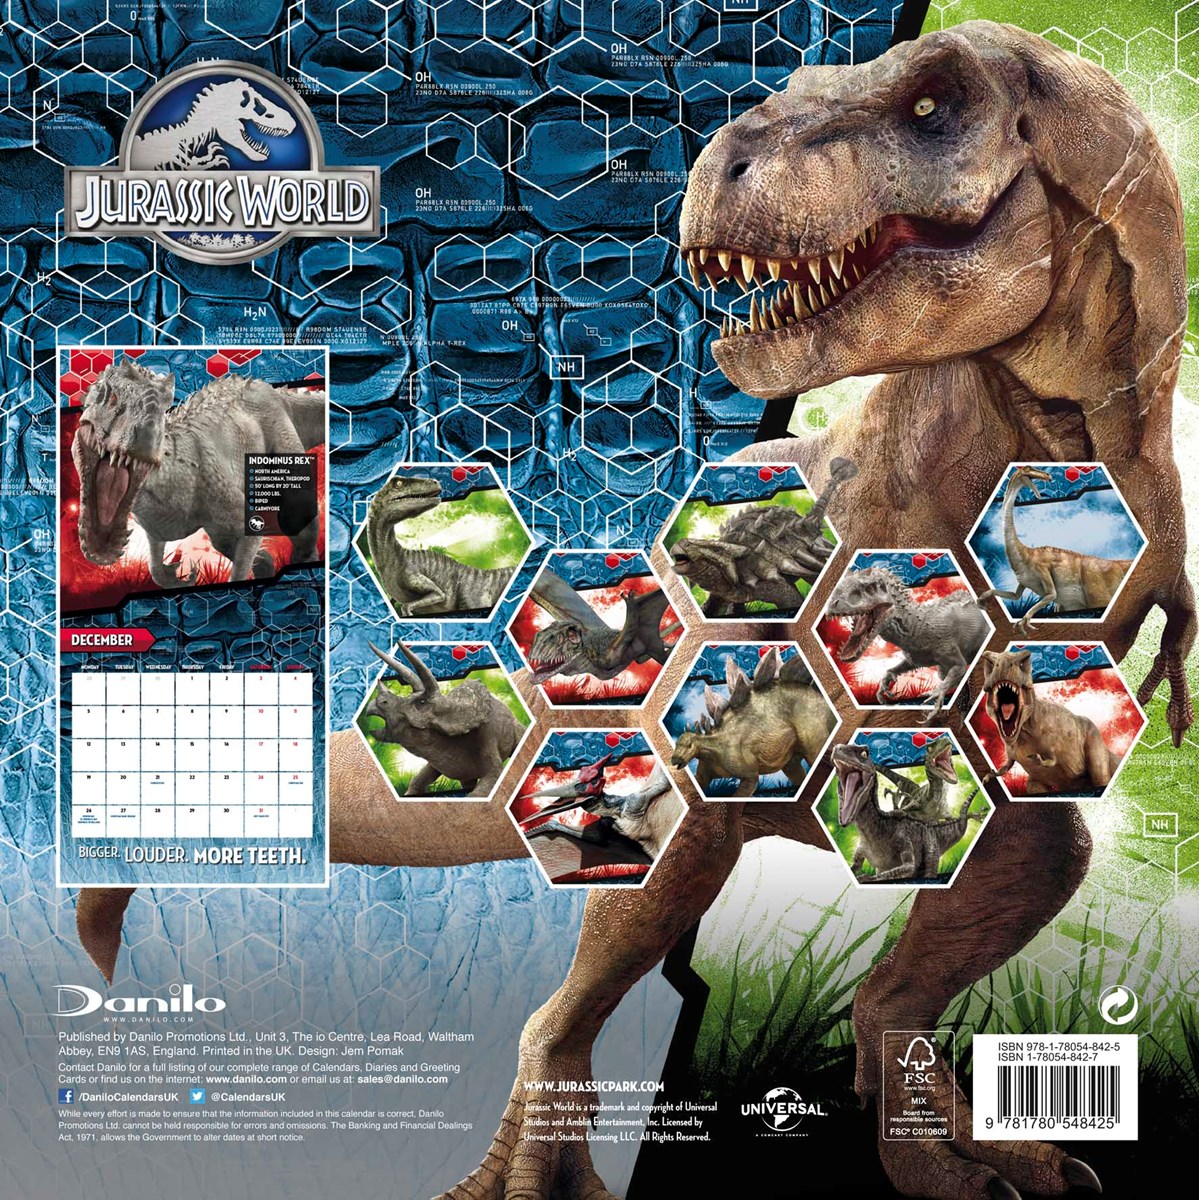 Jurassic World 2016 Square Calendar - Buy Online at Grindstore.com